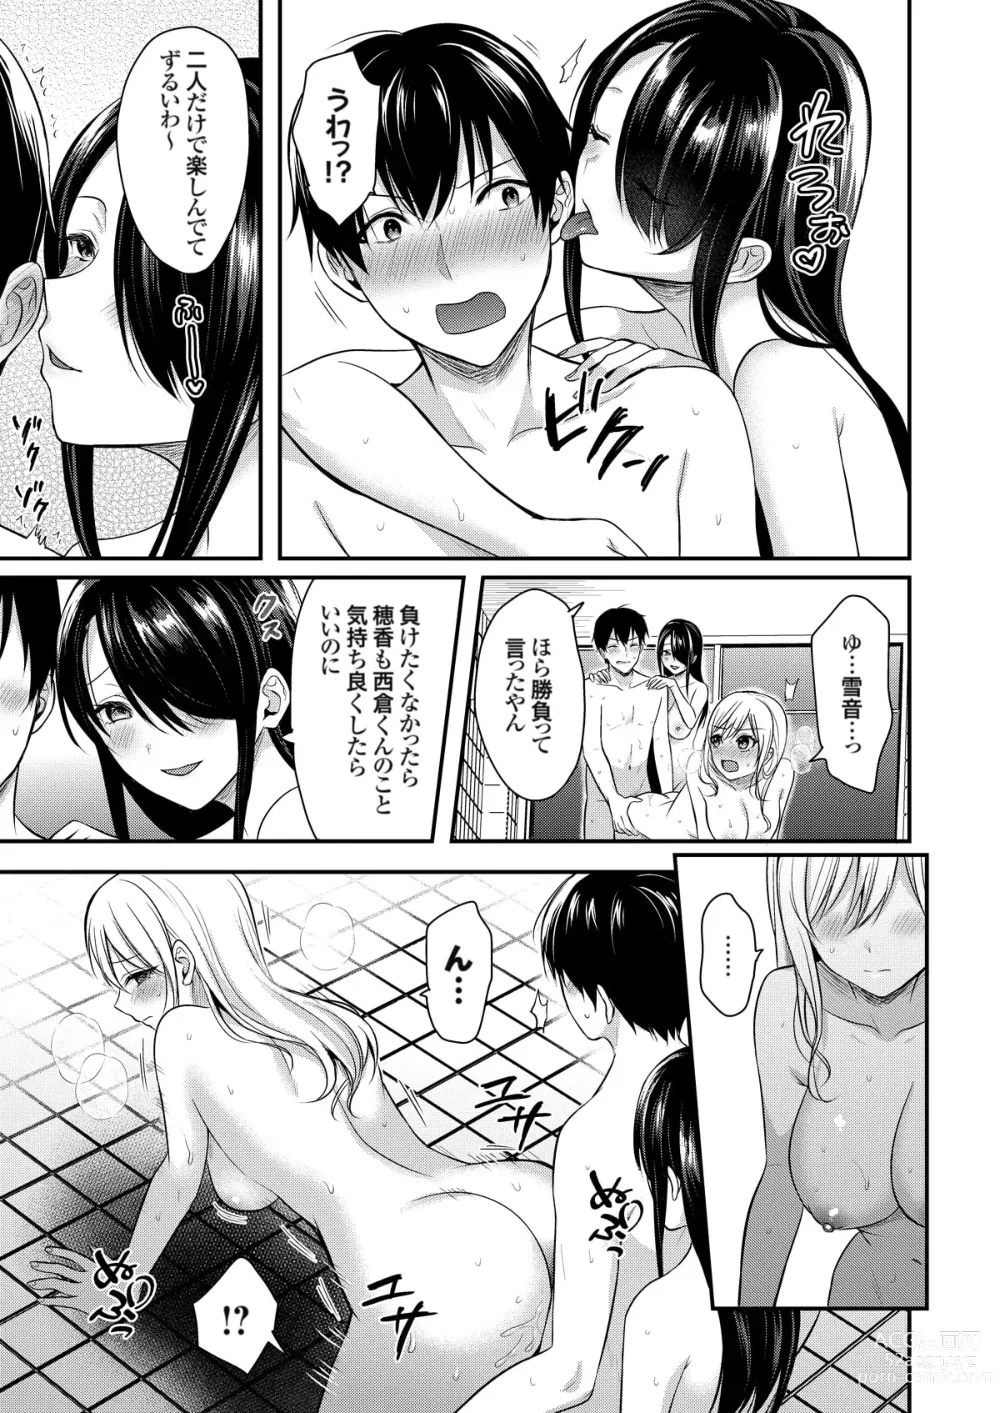 Page 187 of manga Ore no Natsuyasumi wa Gal no Wakaokami to Beit Seikatsu!?